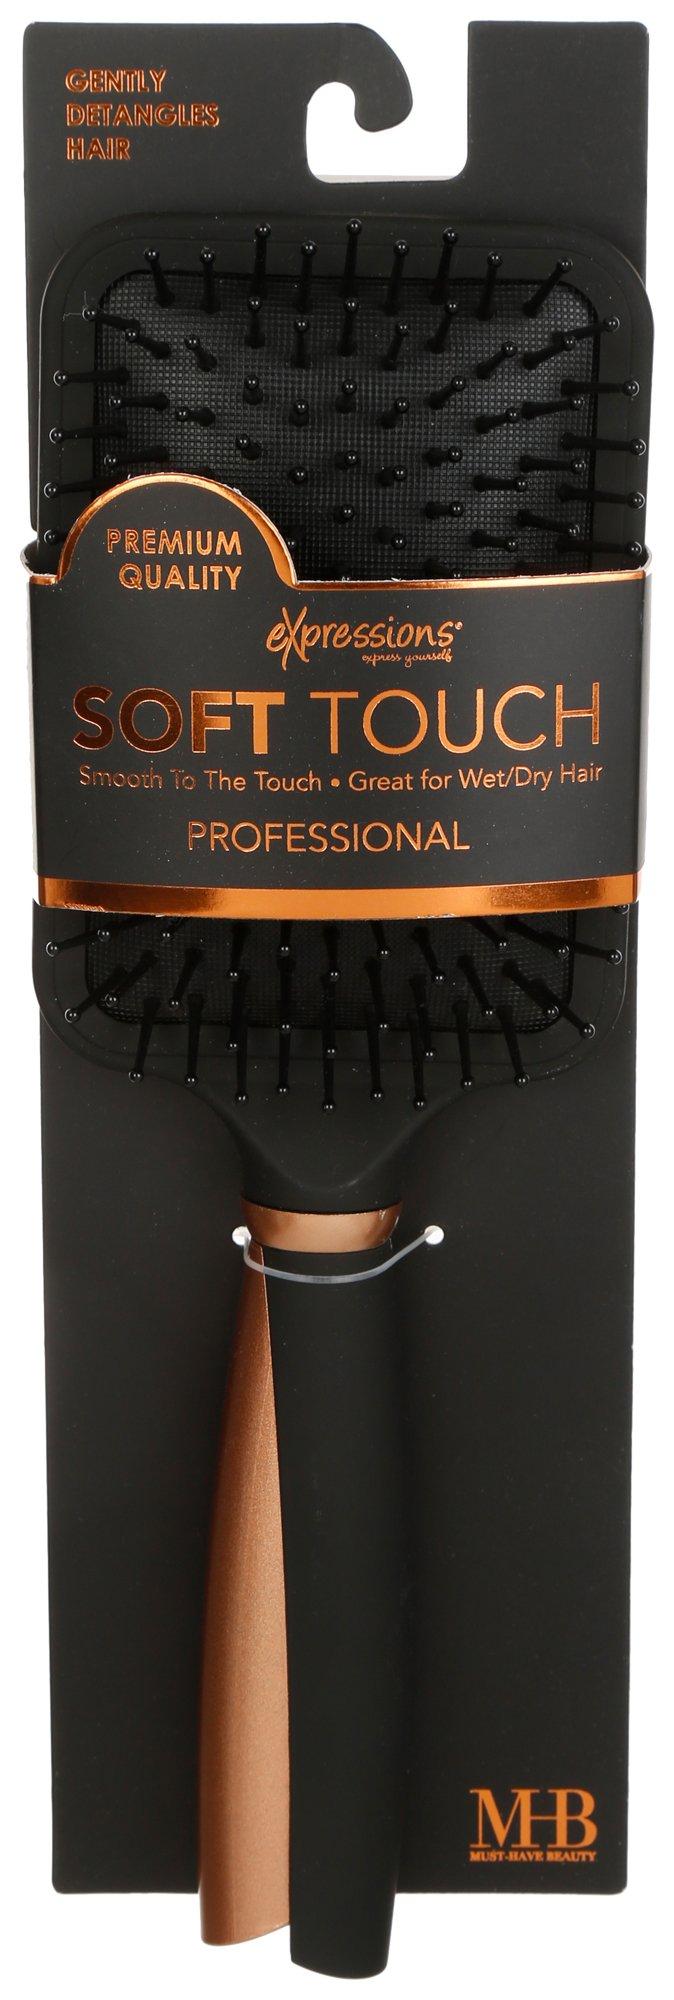 Soft Touch Detangling Hair Brush